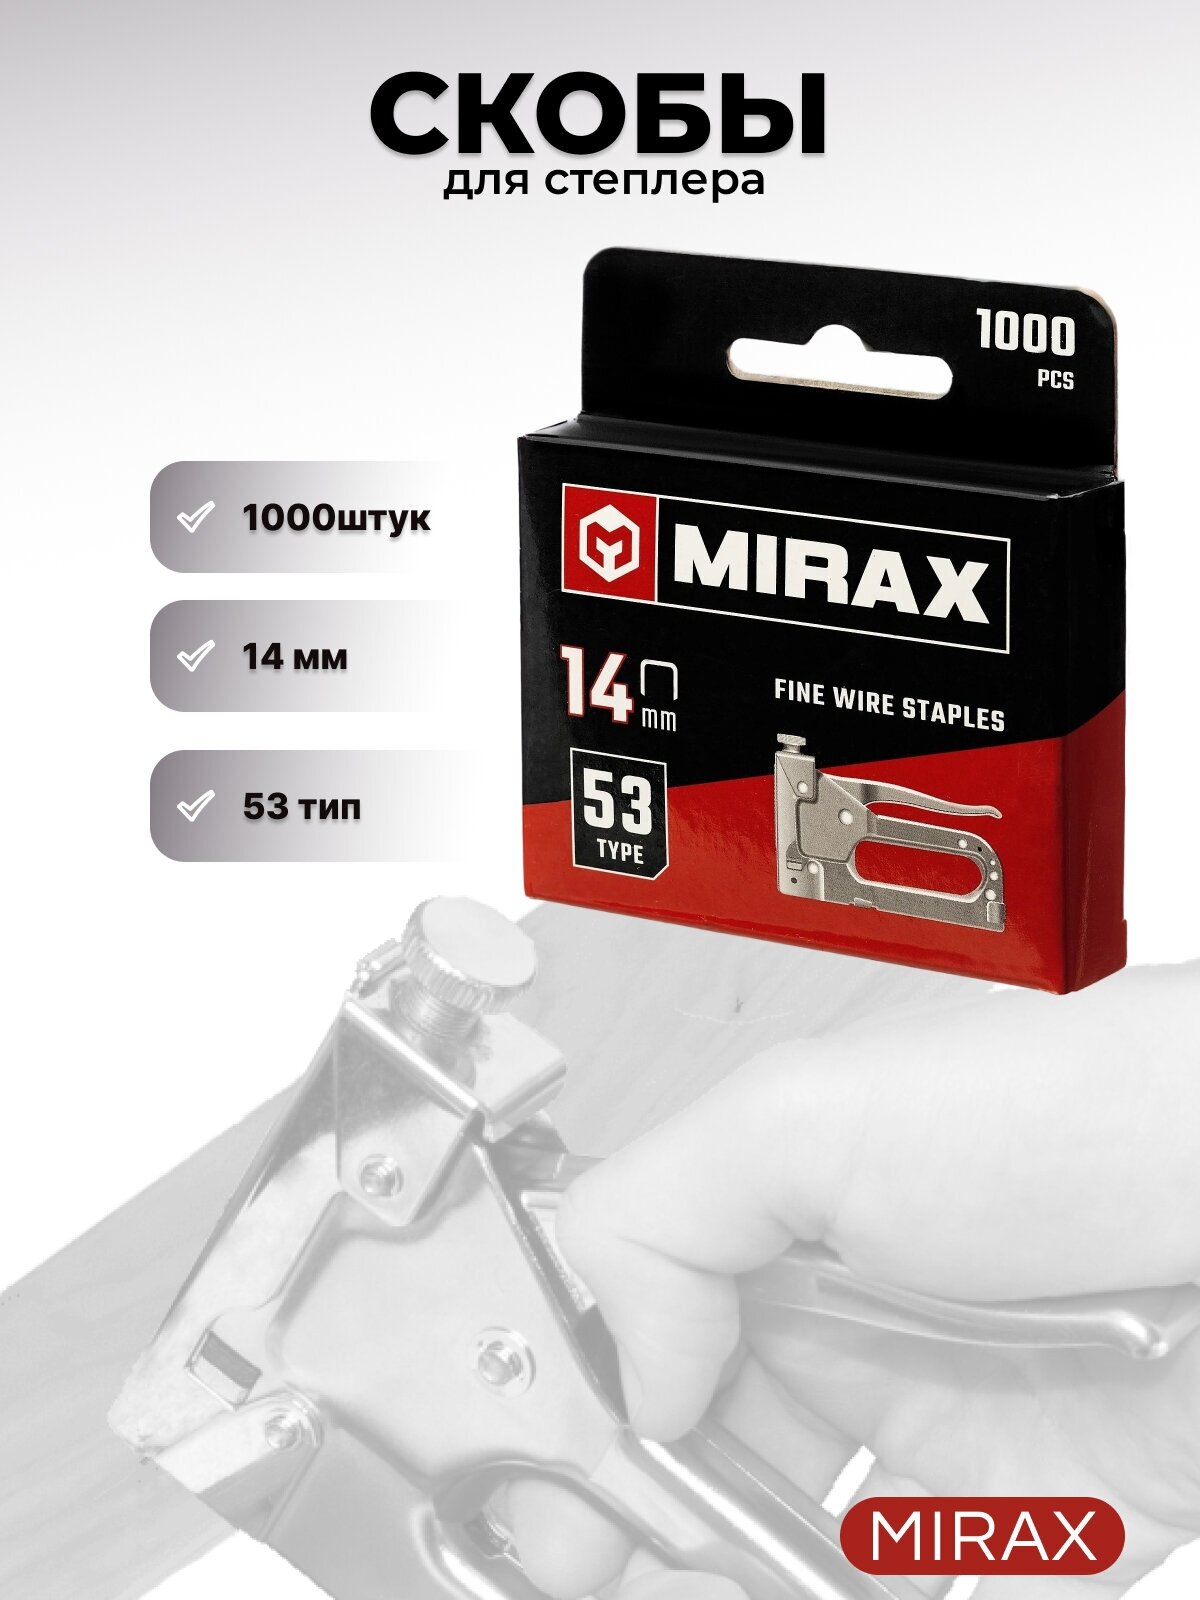 Скобы Mirax 3153-14 тип 53 для степлера, 14 мм